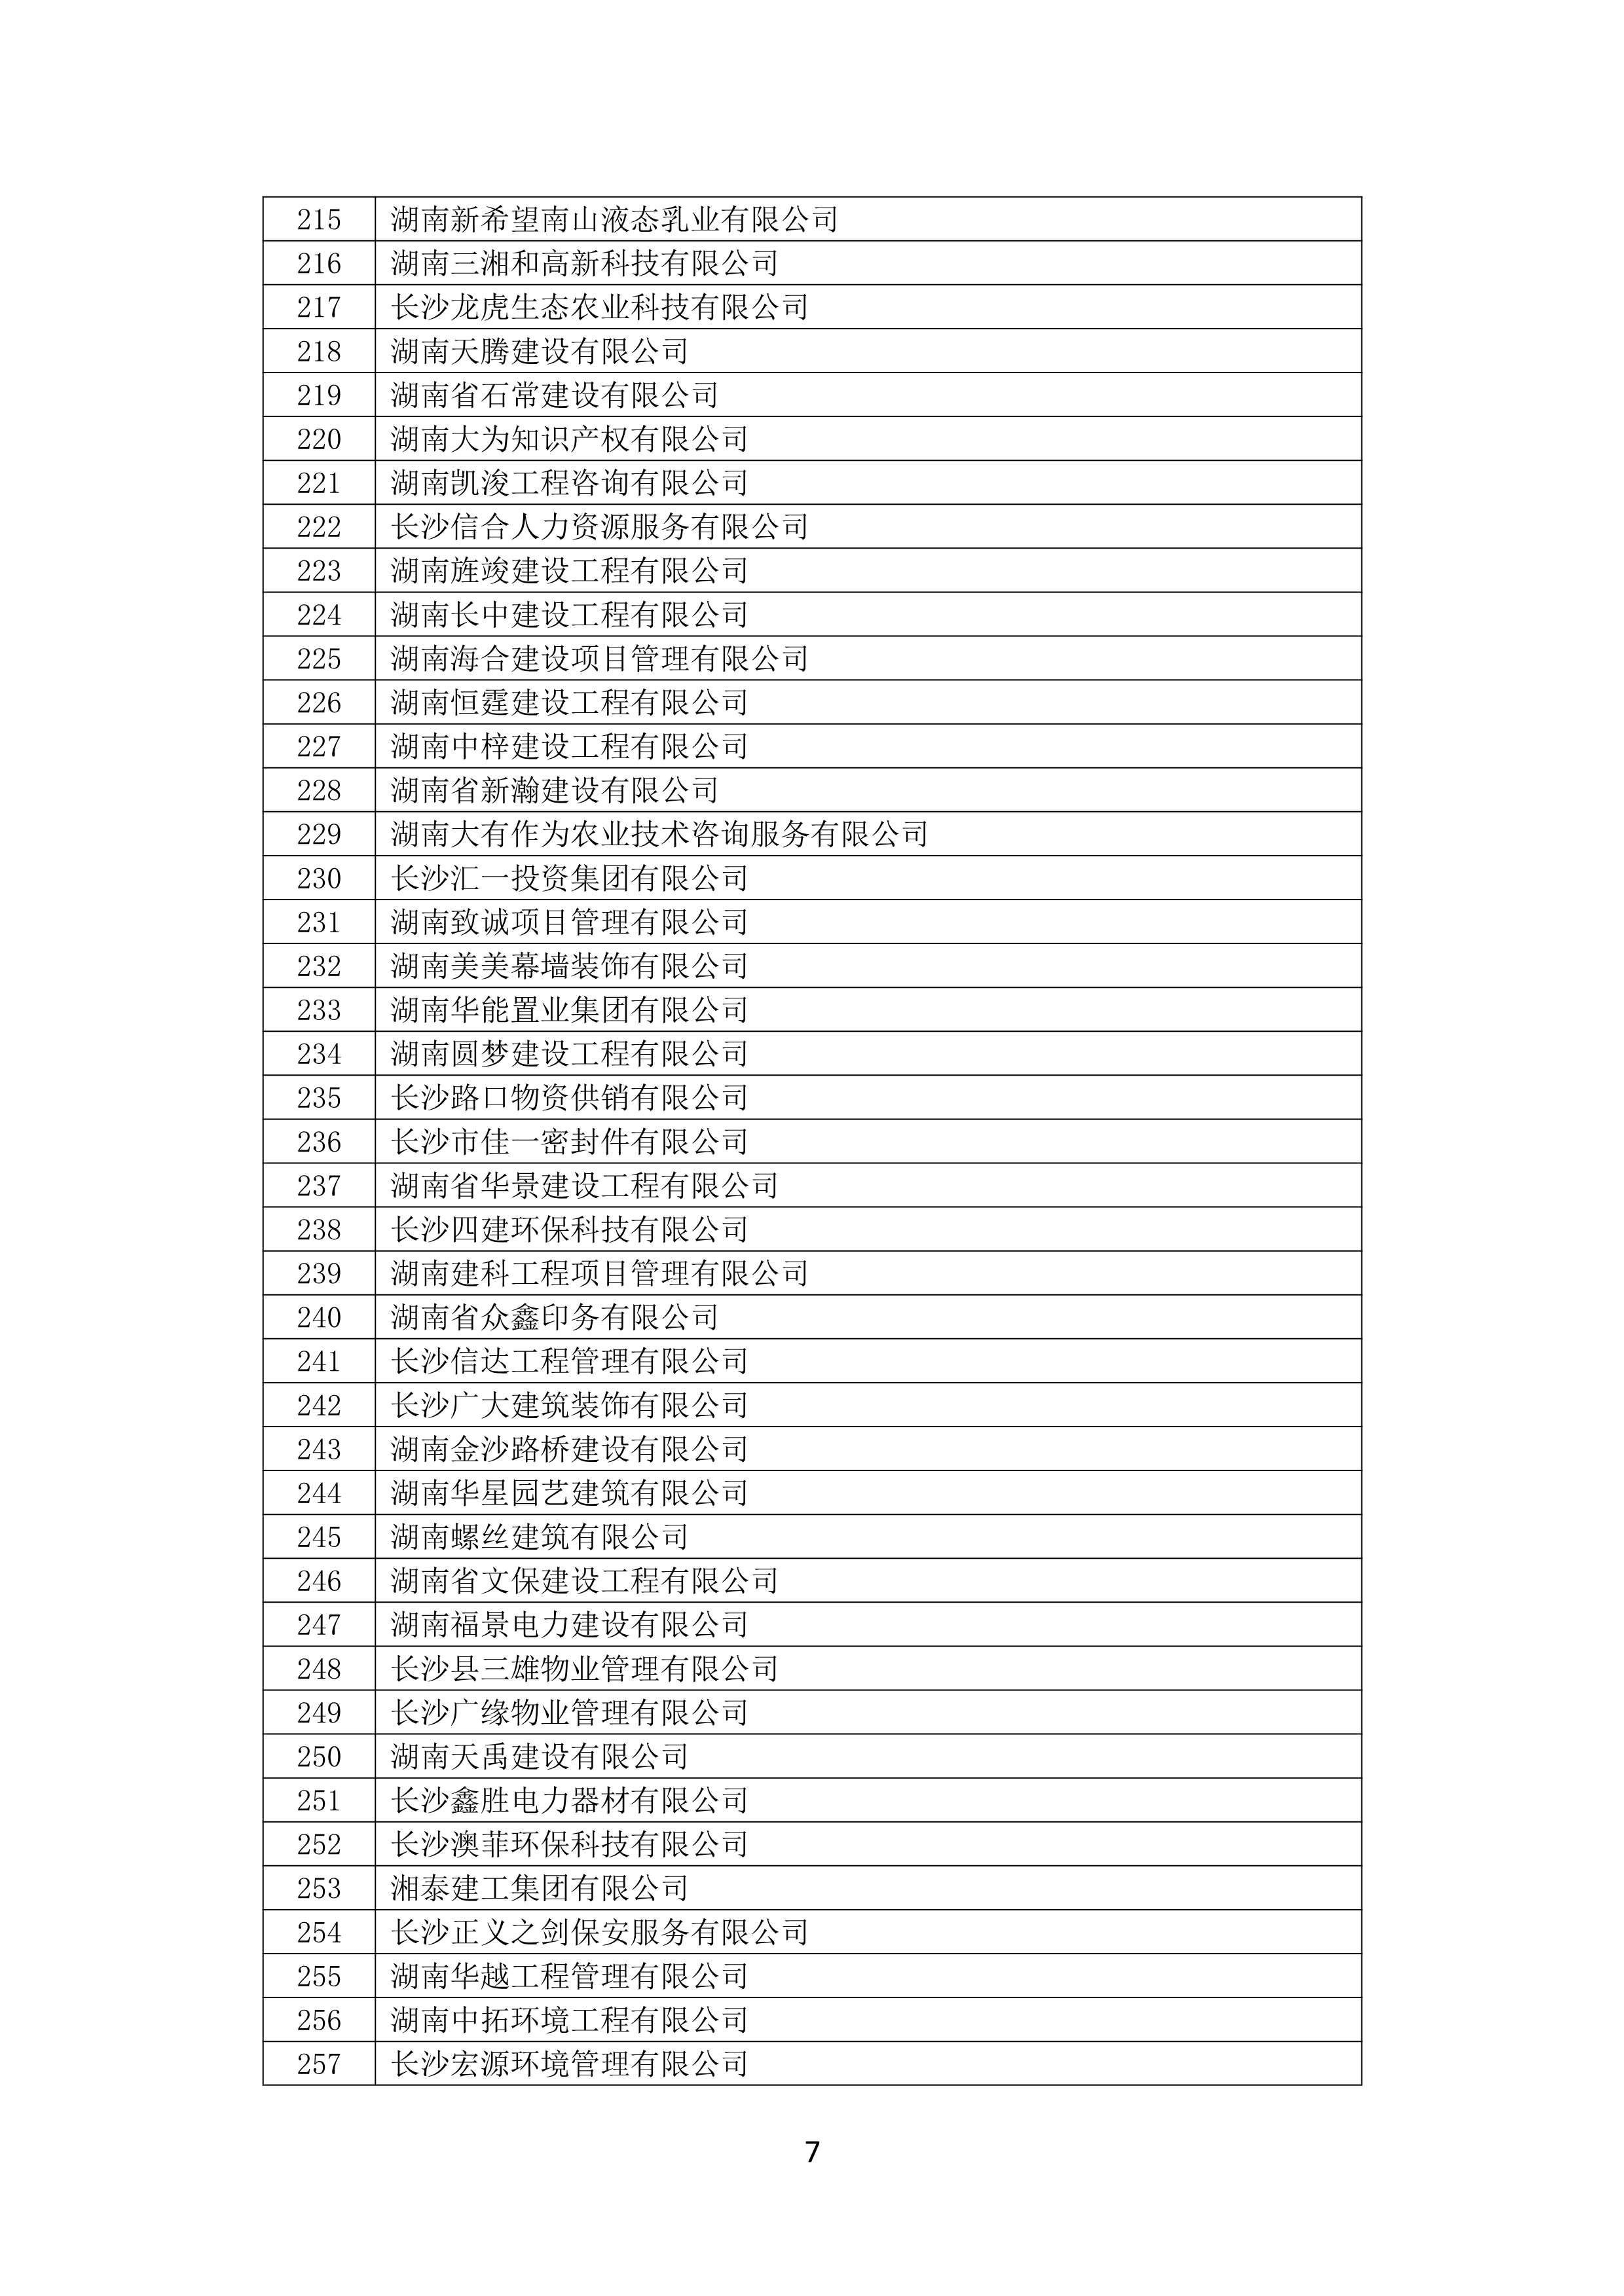 2021 年(nián)度湖南省守合同重信用企業名單_8.png